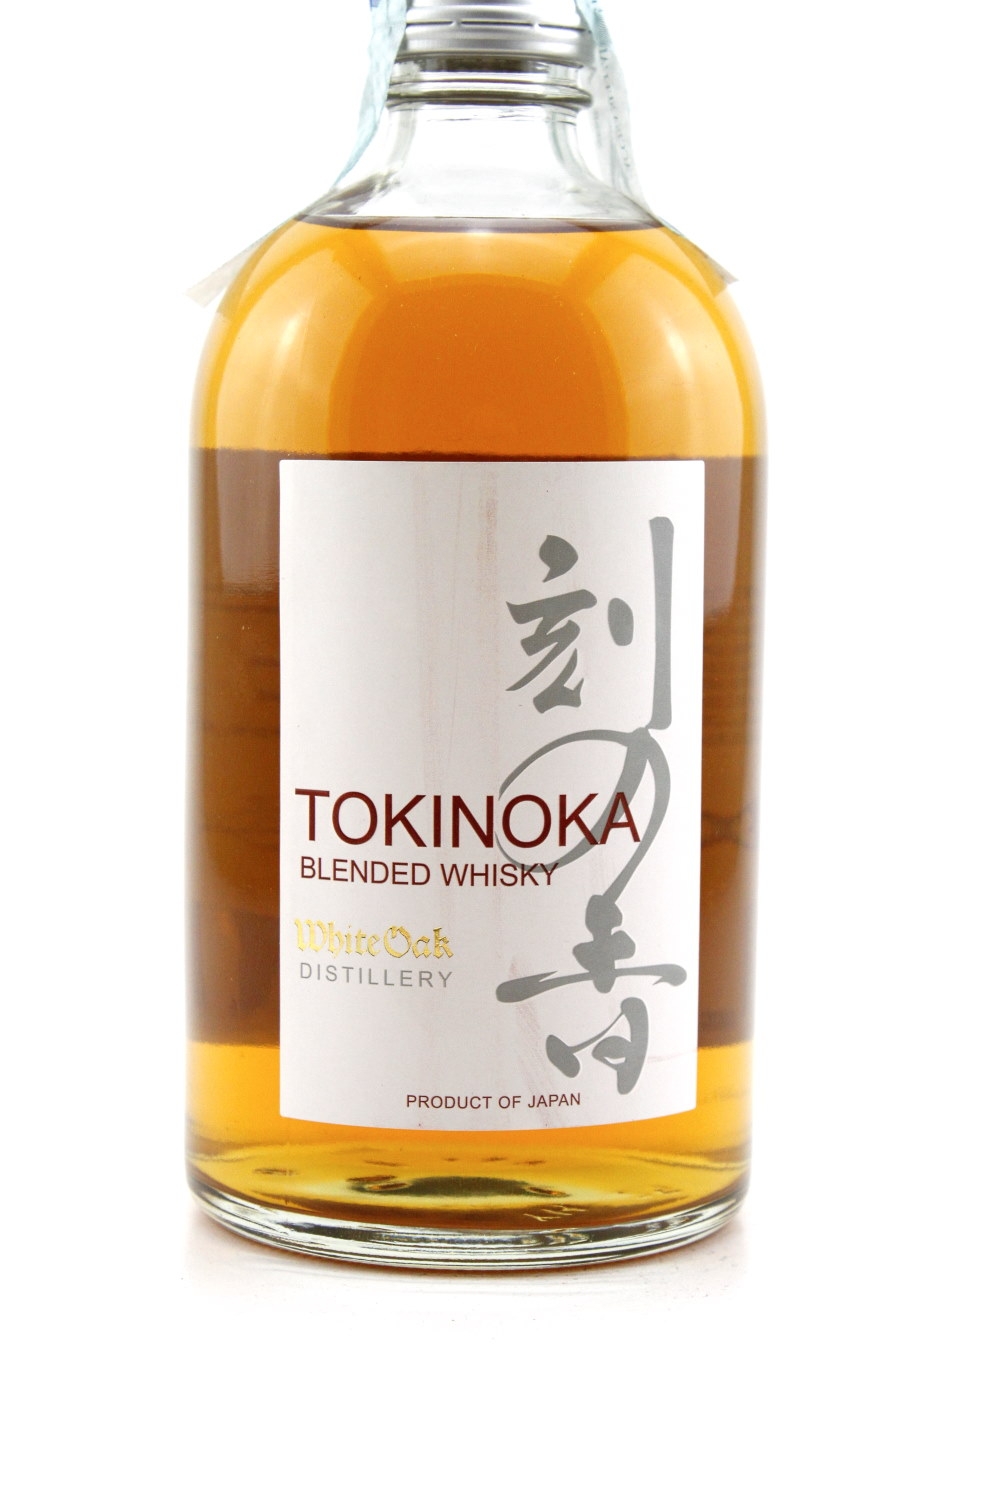 White Oak Blended Whisky "Tokinoka" 40% vol. Whisky Japa...